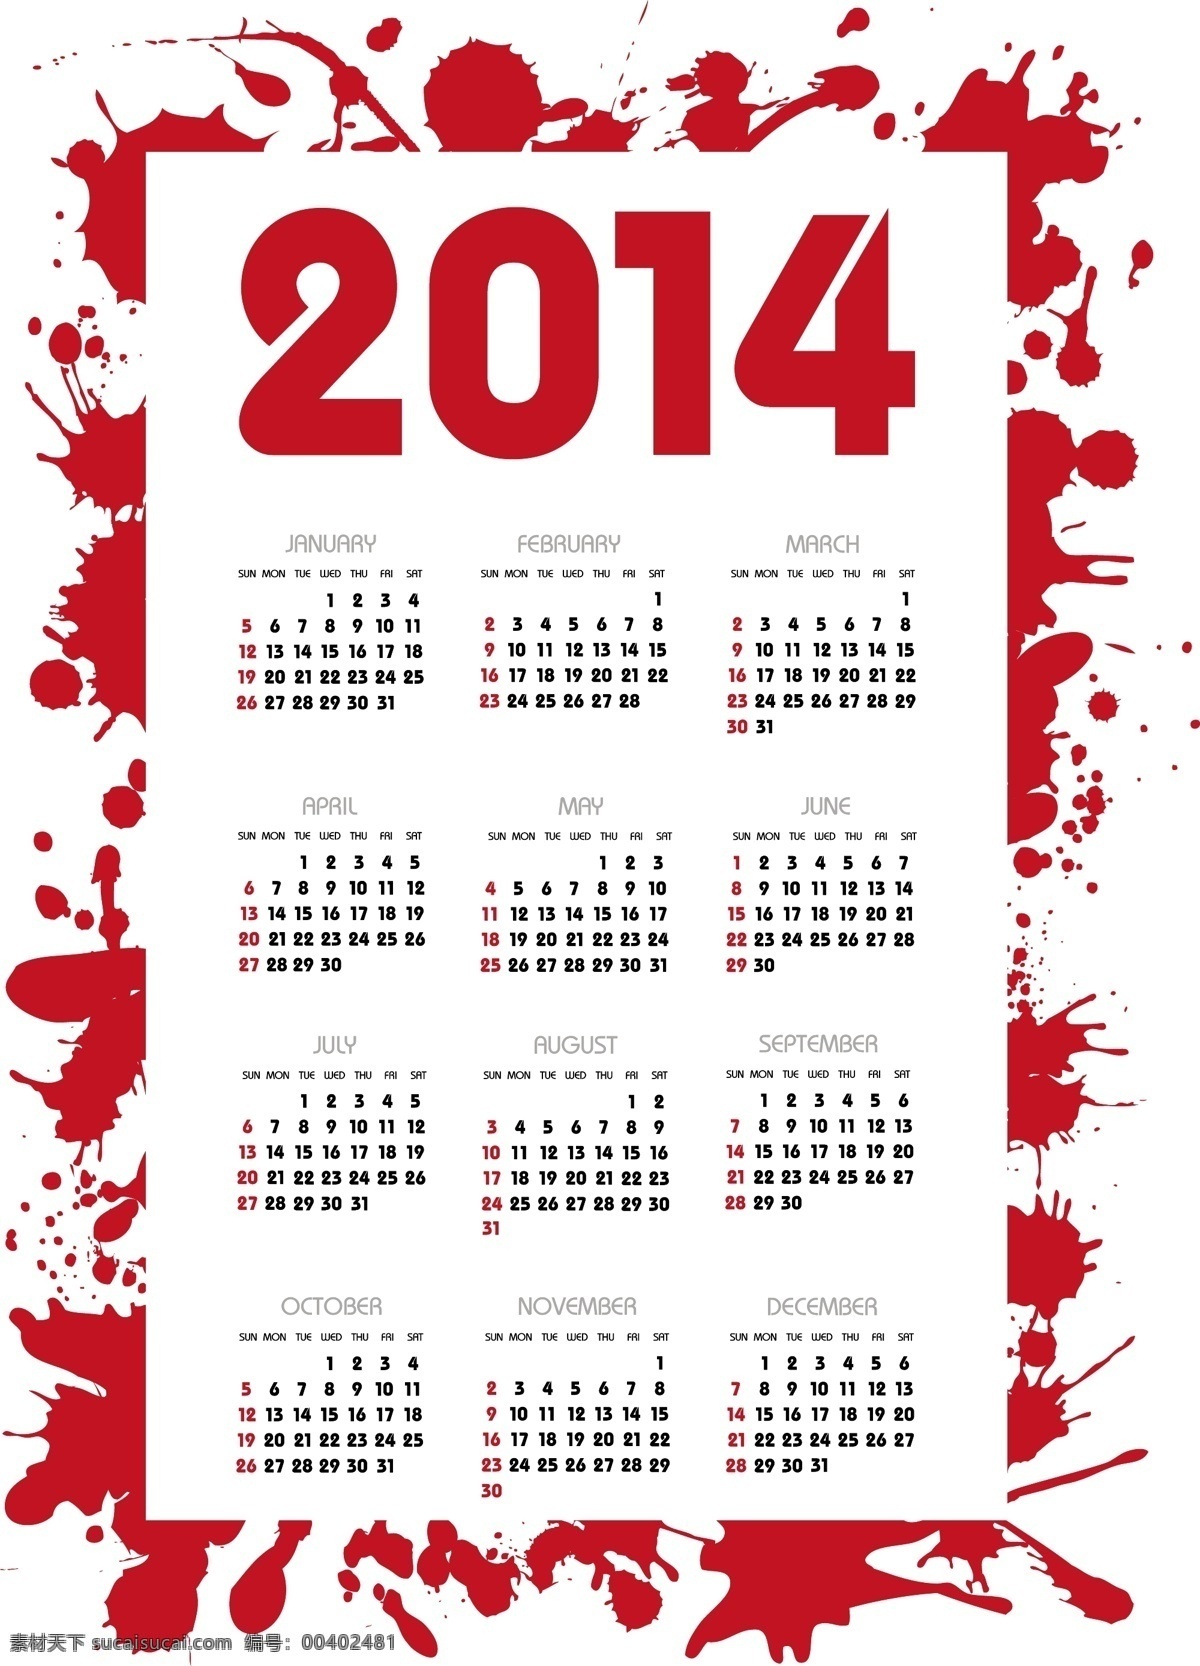 红色 墨迹 日历 模版 喷墨 2014 台历 日历设计 日历模板 日历台历 矢量素材 白色